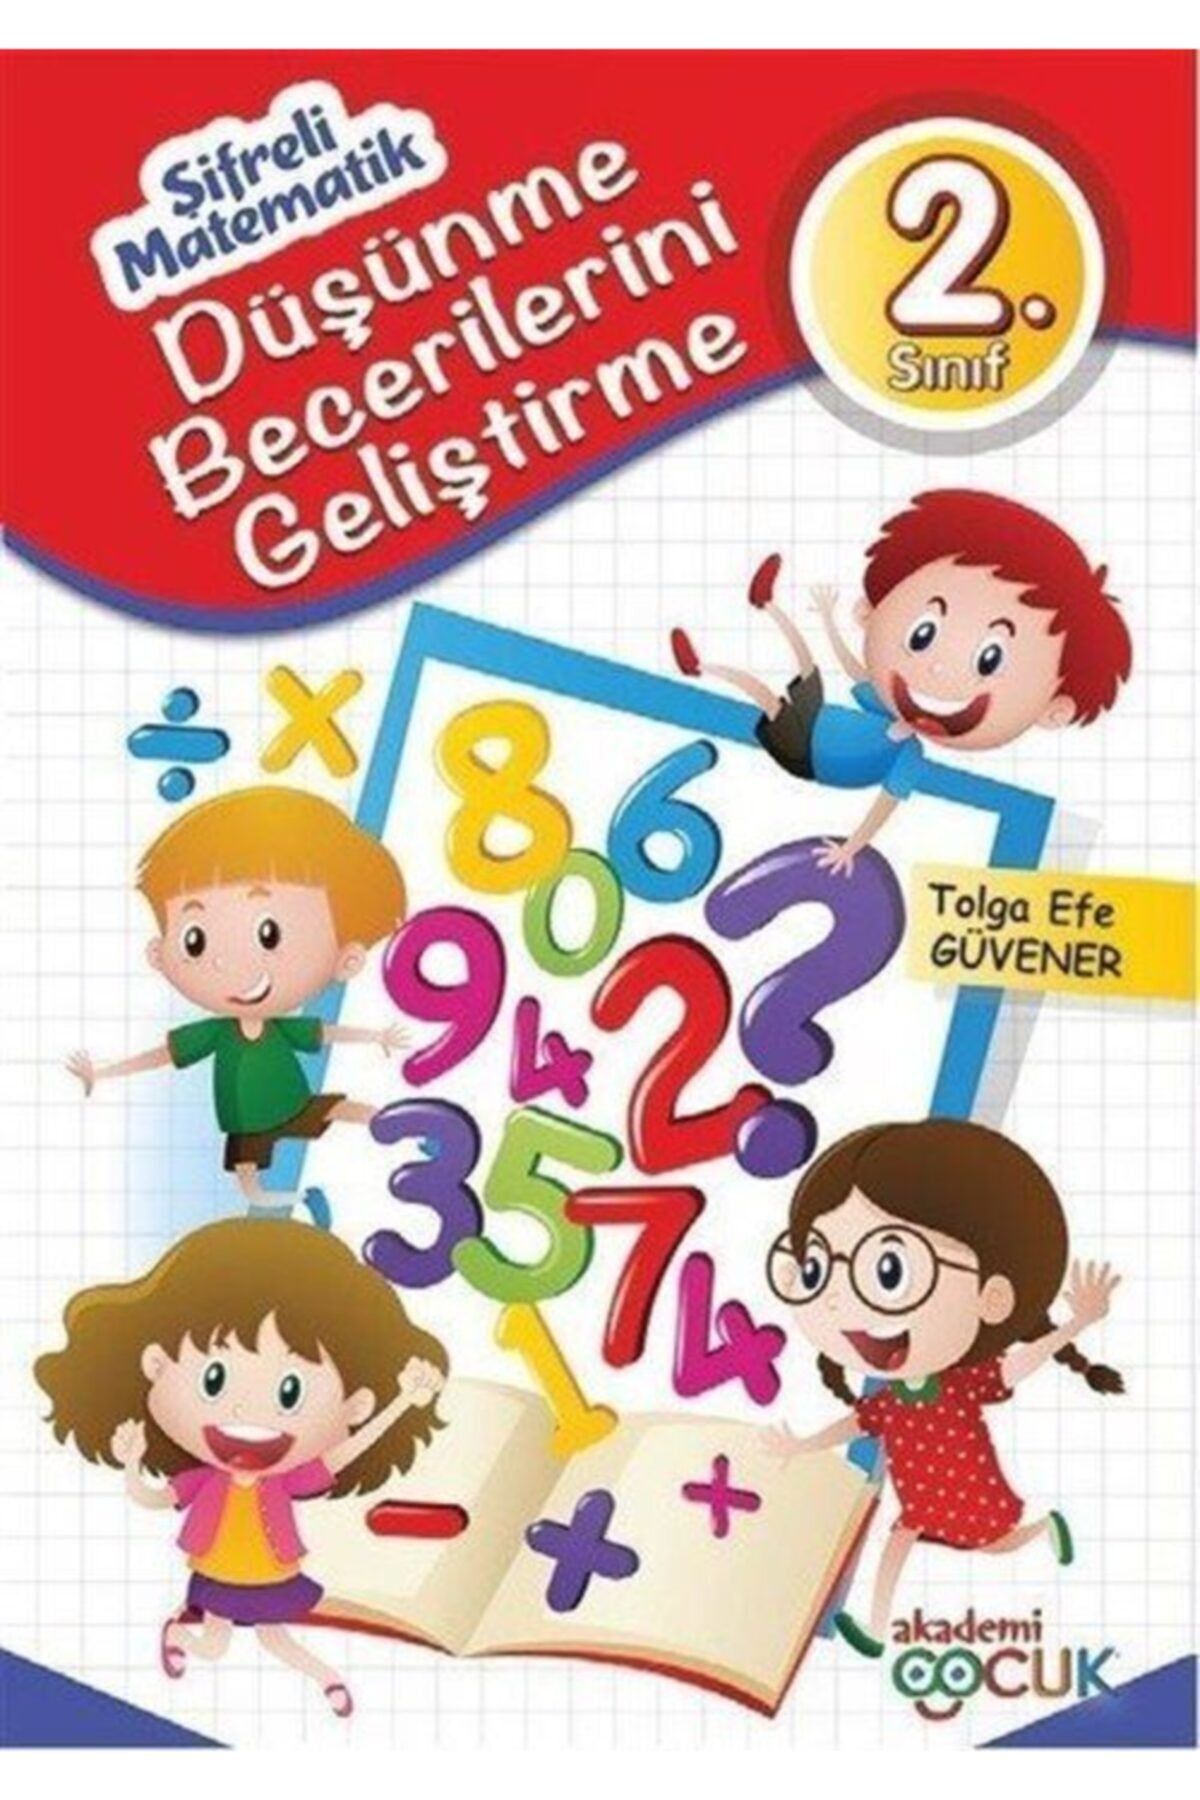 Akademi Çocuk 2. Sınıf Şifreli Matematik (düşünme Becerilerini Geliştirme) Tolga Efe Güvener